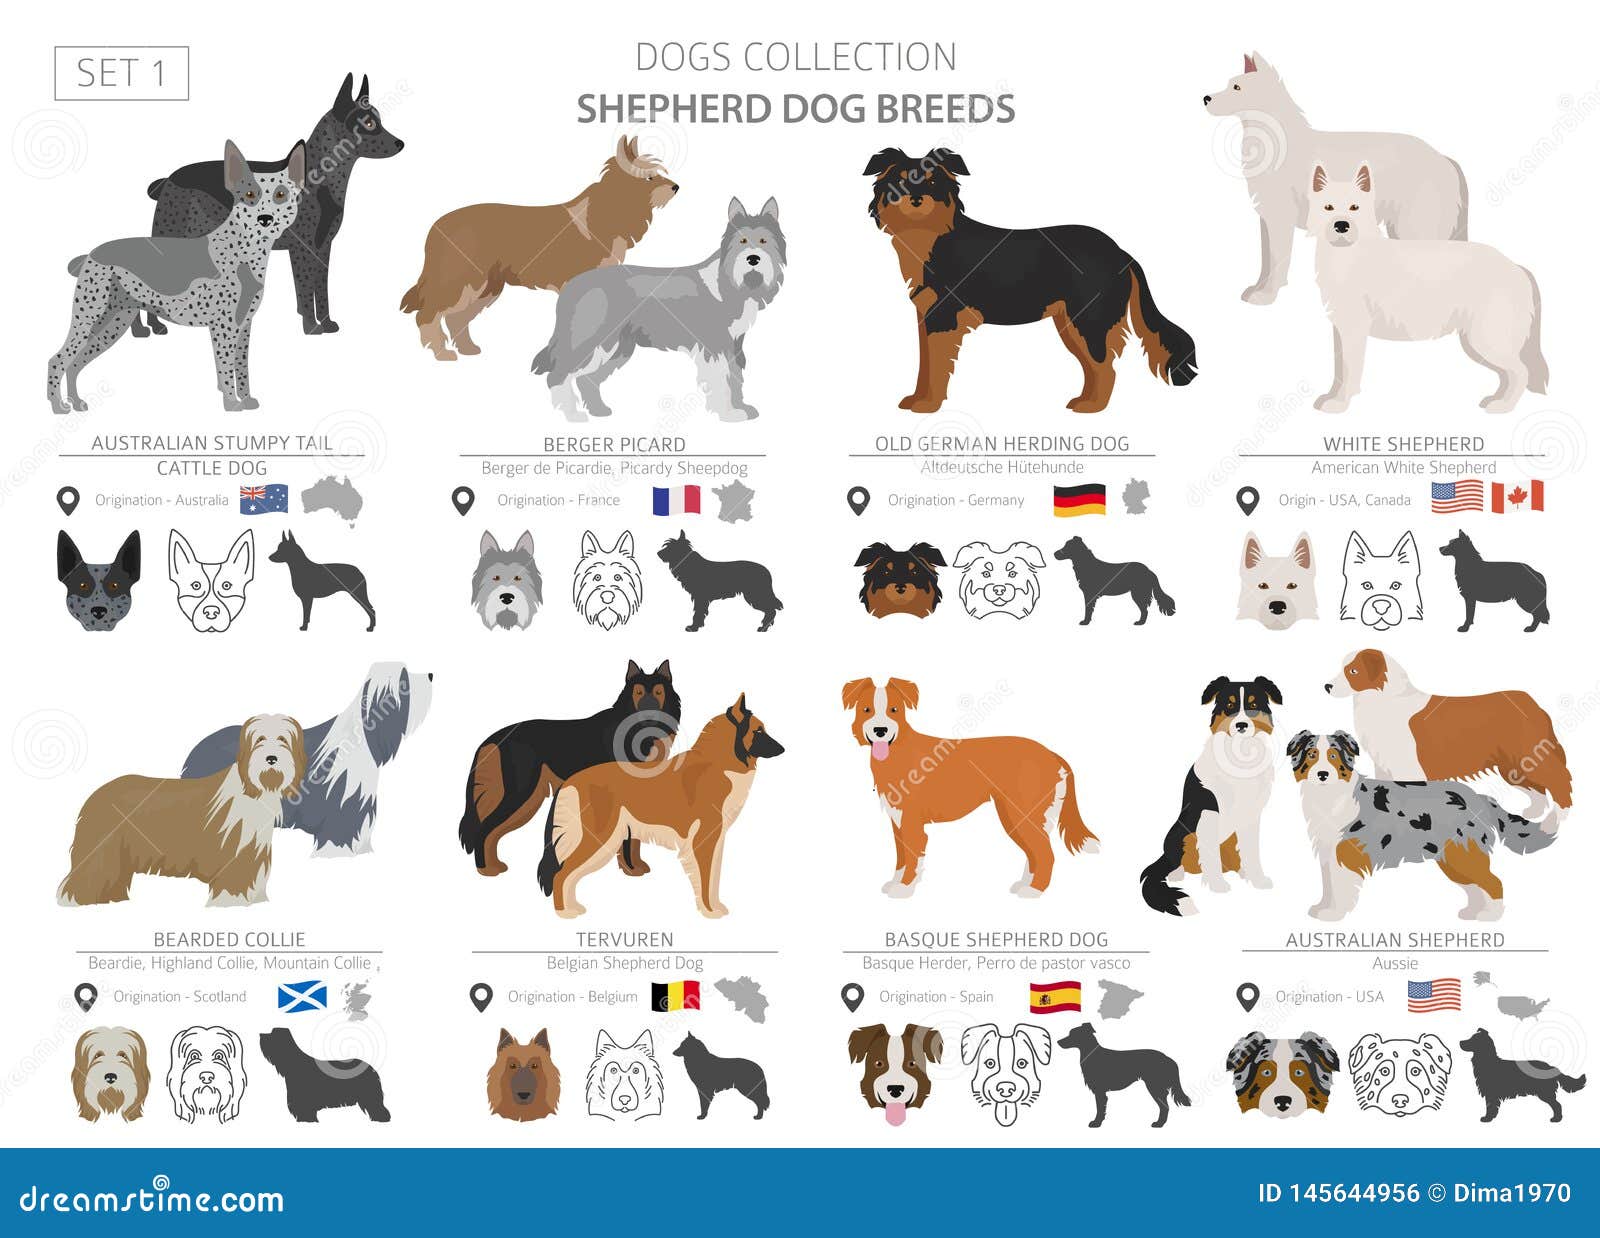 different breeds of shepherd